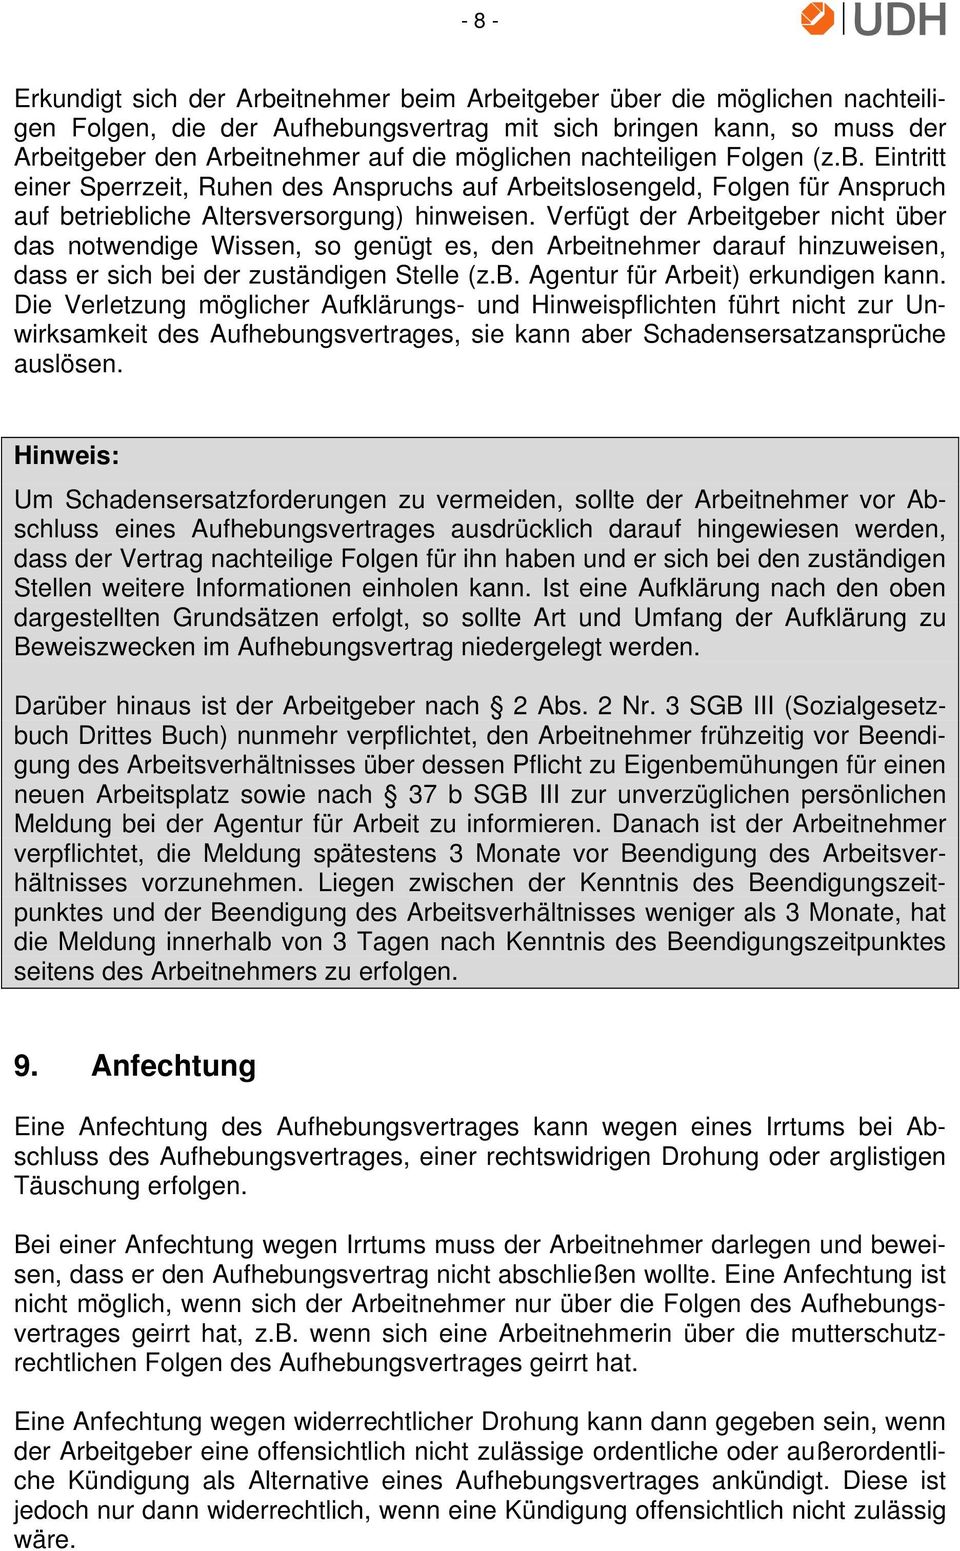 Unternehmerverband Deutsches Handwerk Merkblatt Aufhebungsvertrag